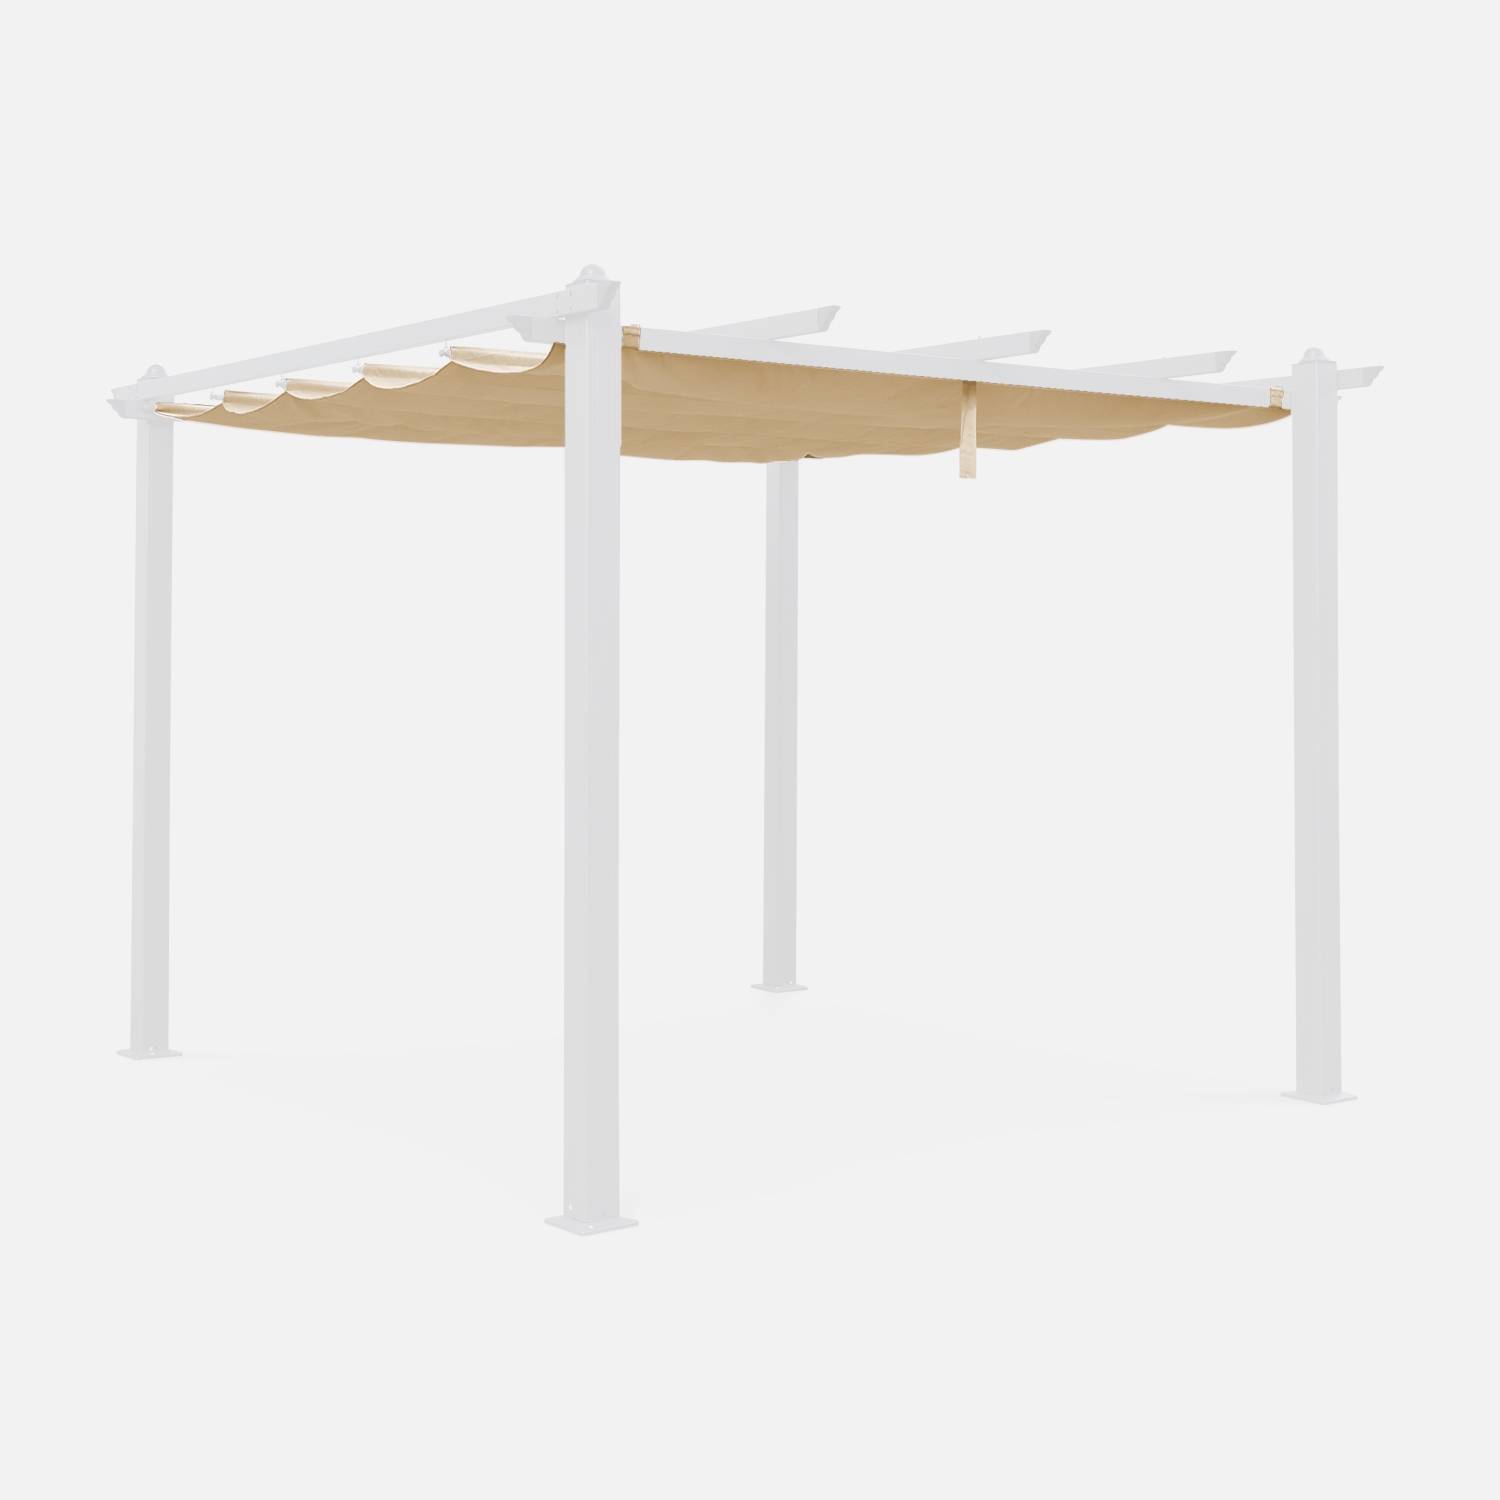 Toile de toit beige pour tonnelle 3x3m Condate - toile de rechange pergola, toile de remplacement | sweeek